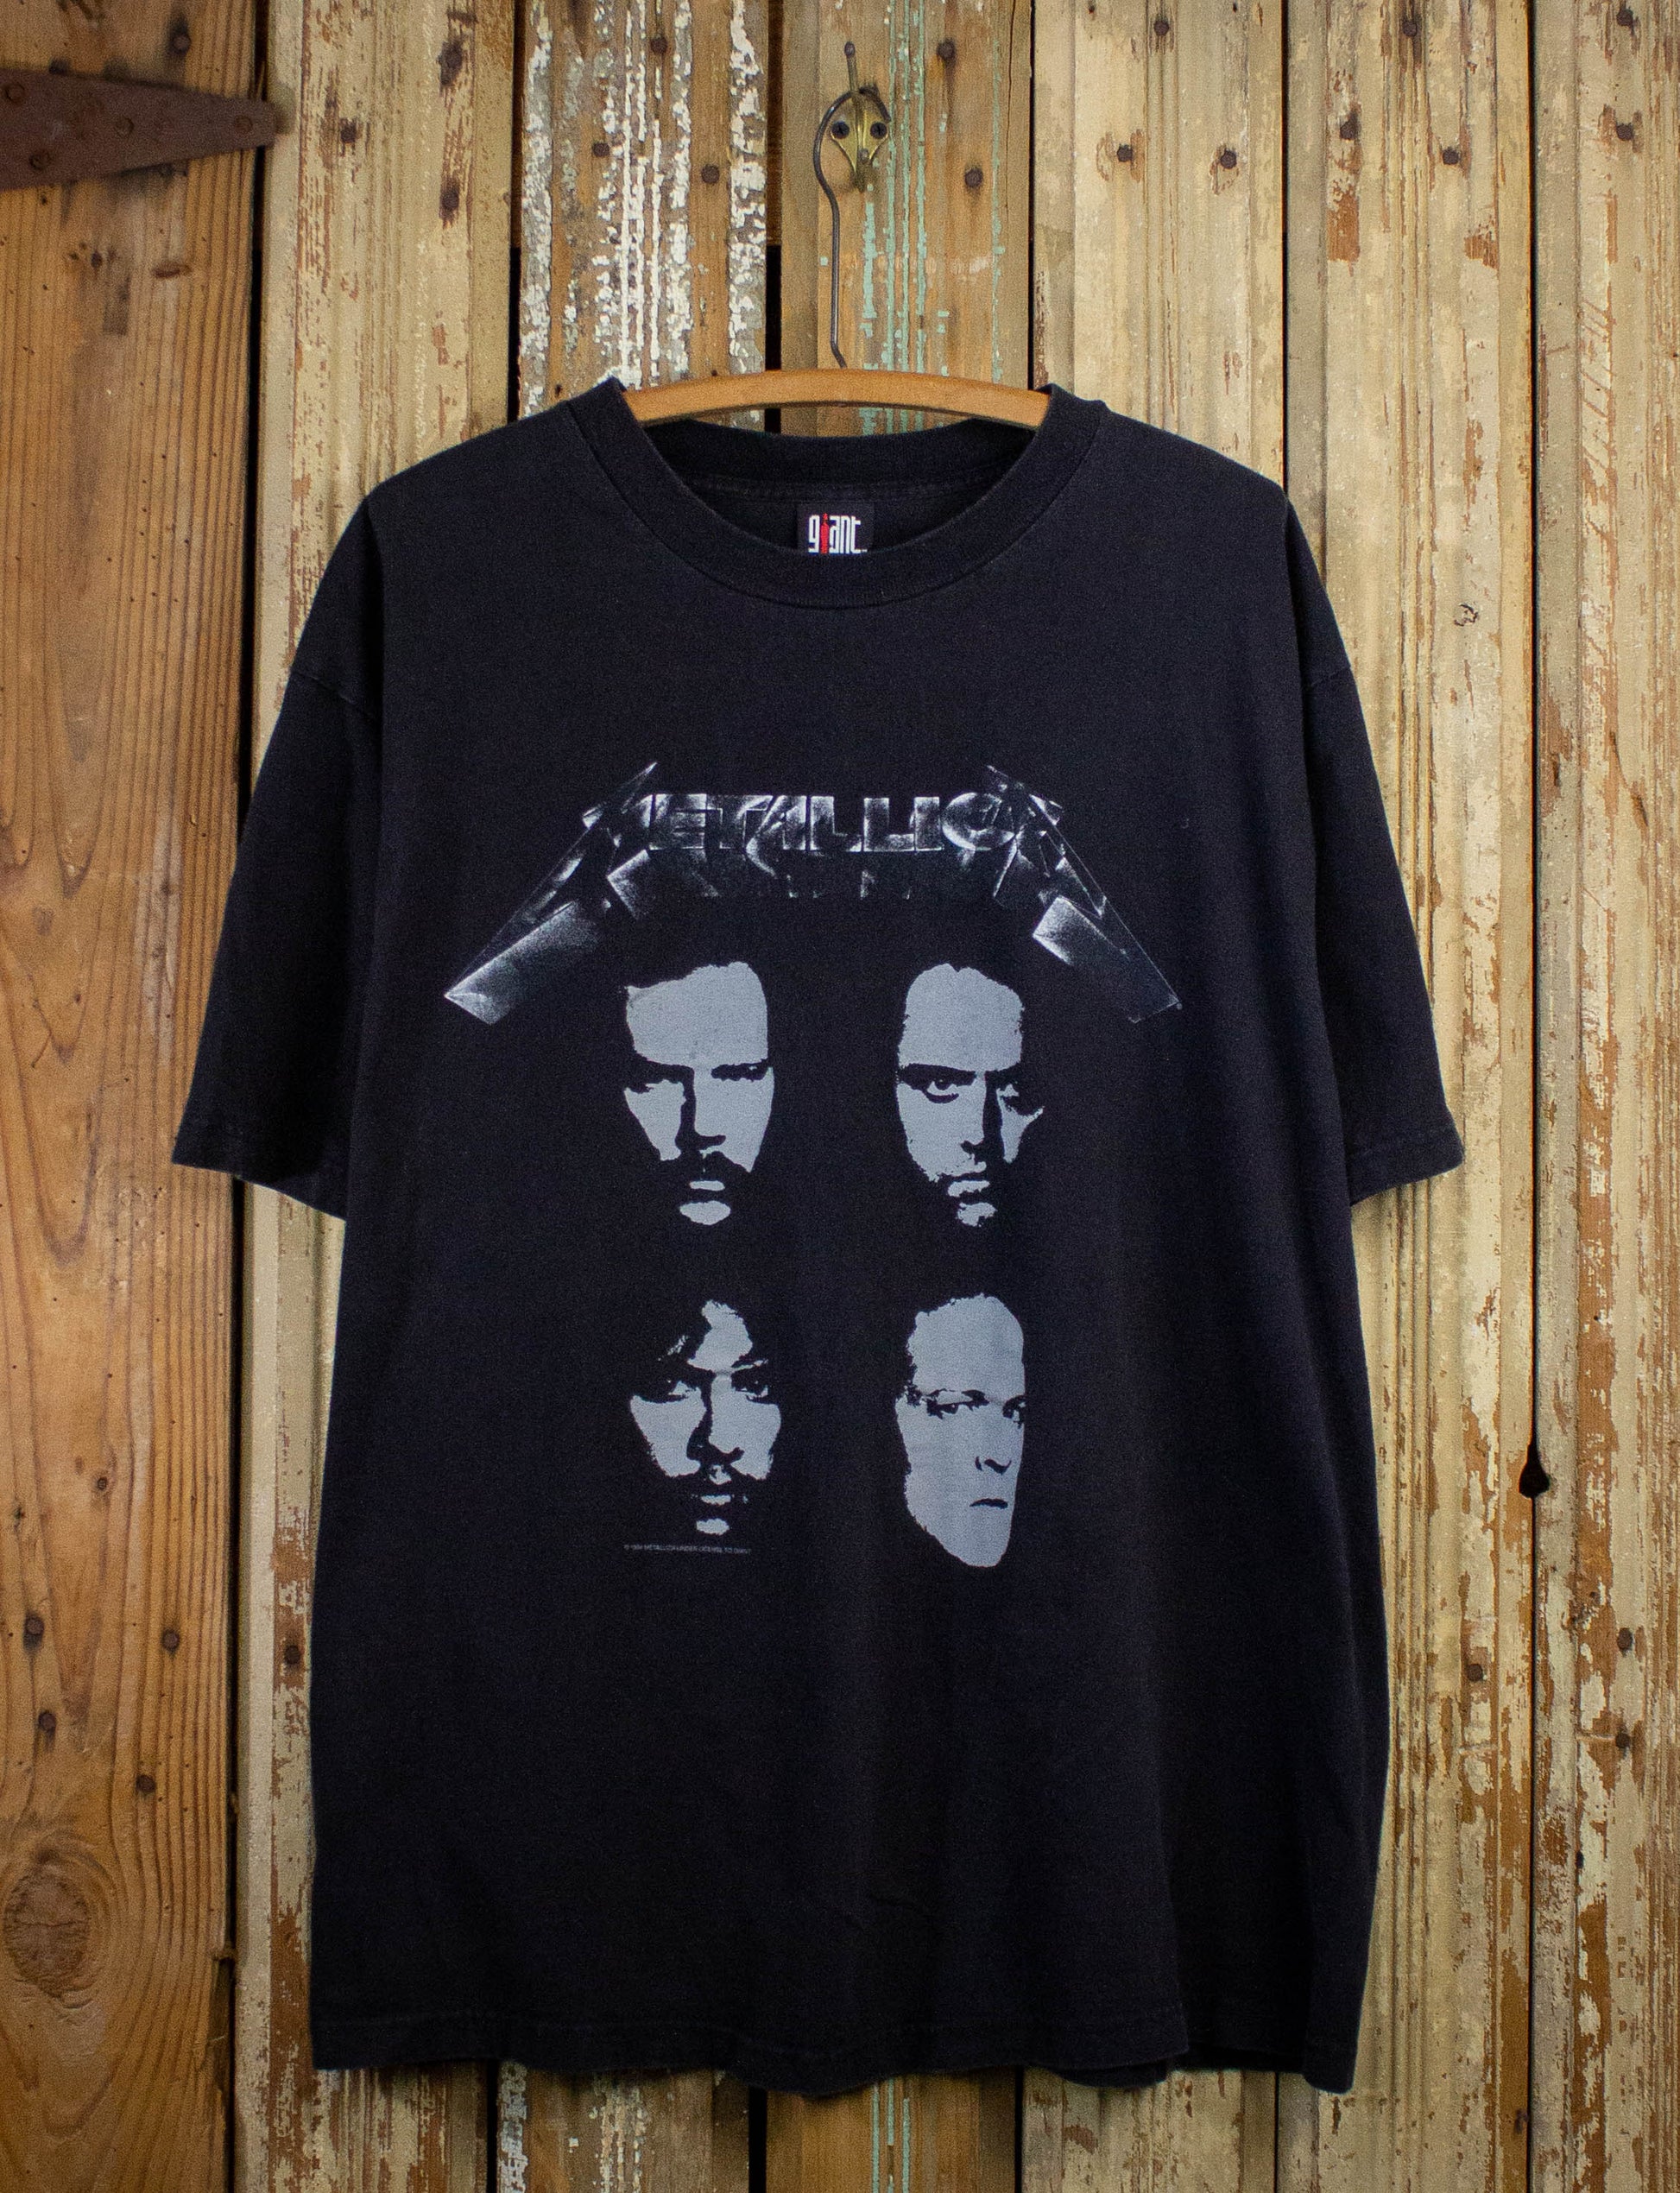 Vintage Metallica Faces Concert T Shirt 1994 Black XL